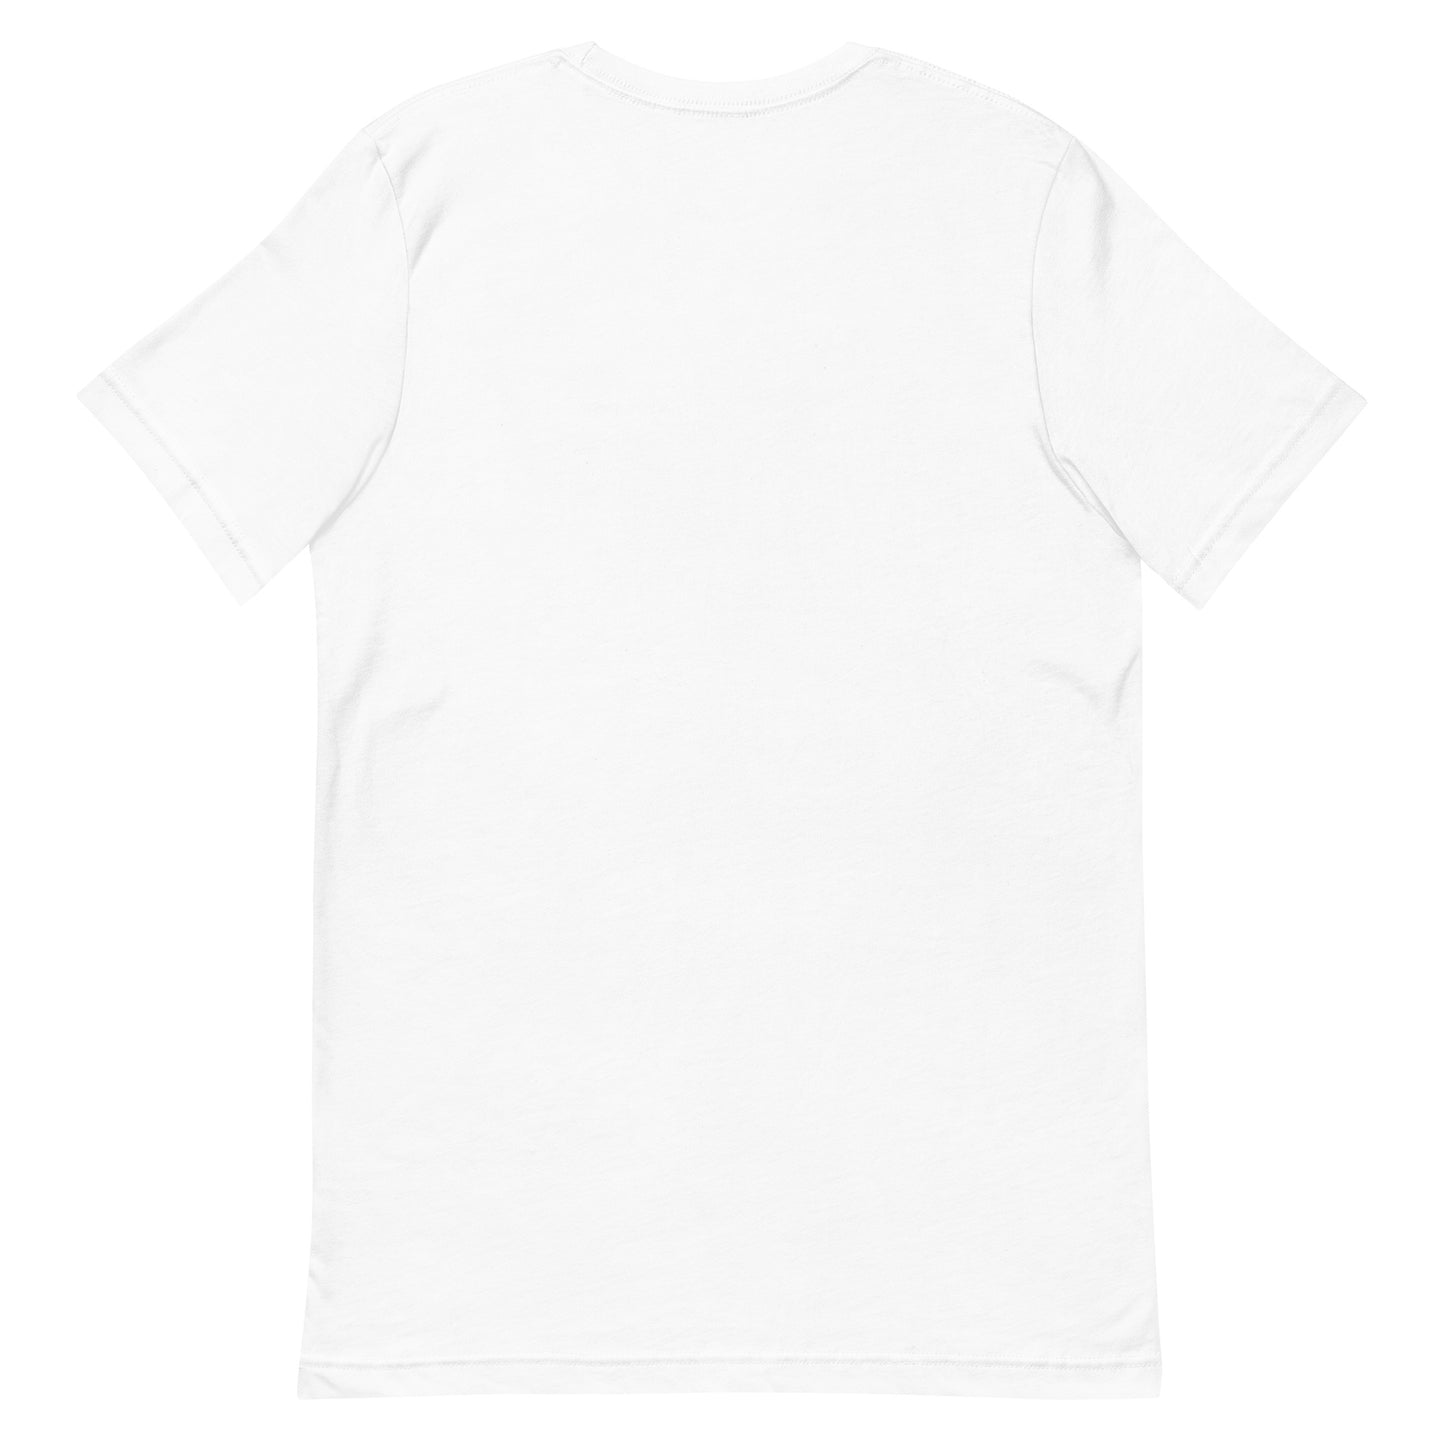 Unisex t-shirt "38 GOBAN ZEME" White